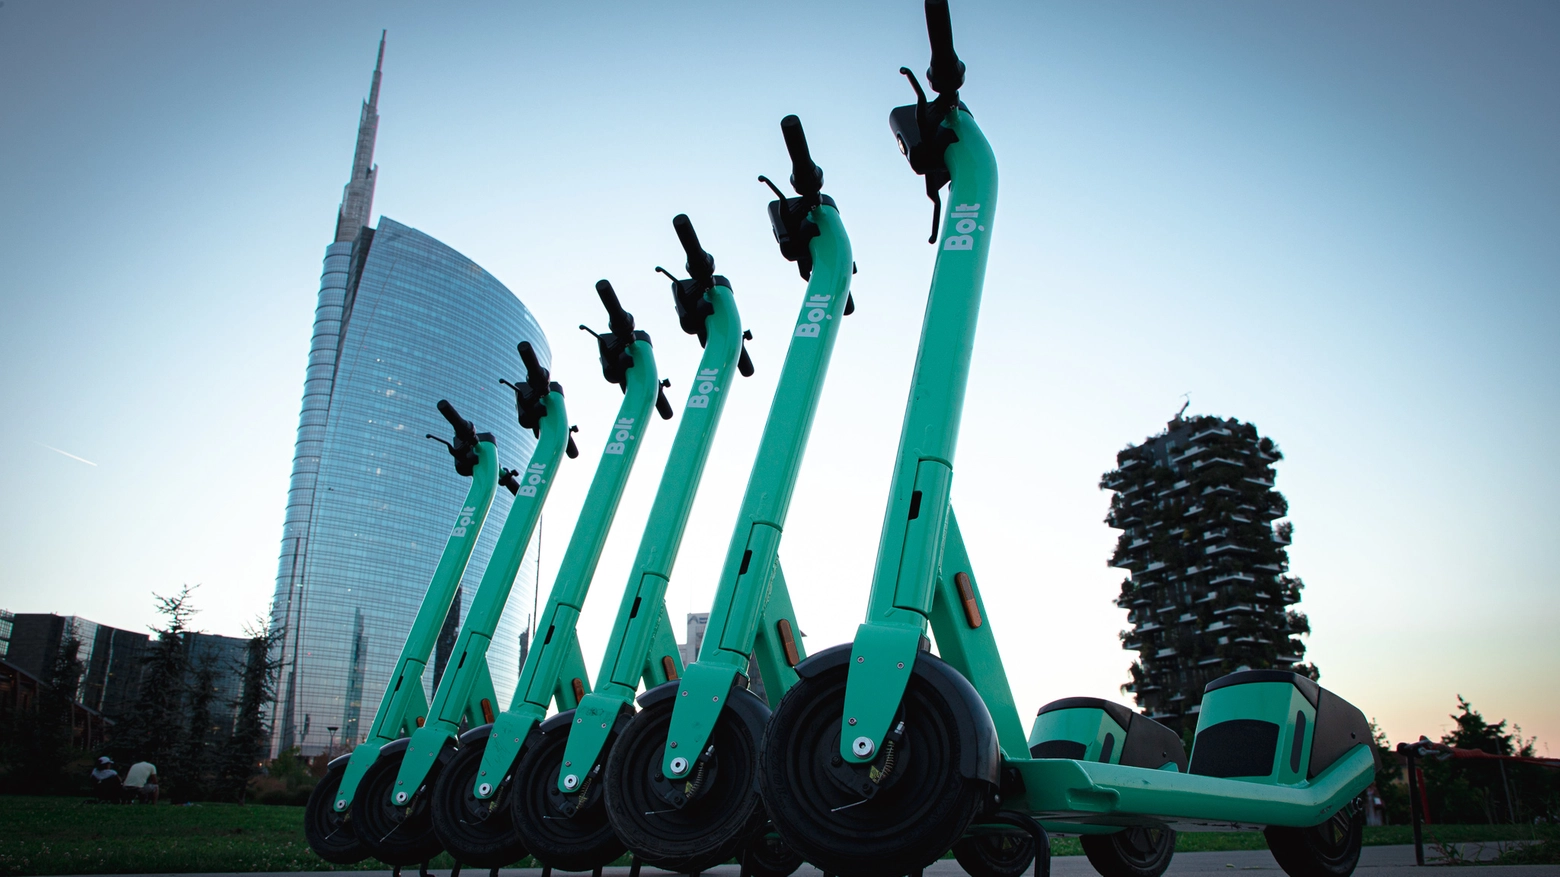 Il nuovo servizio di monopattini elettrici a noleggio arriva a Milano